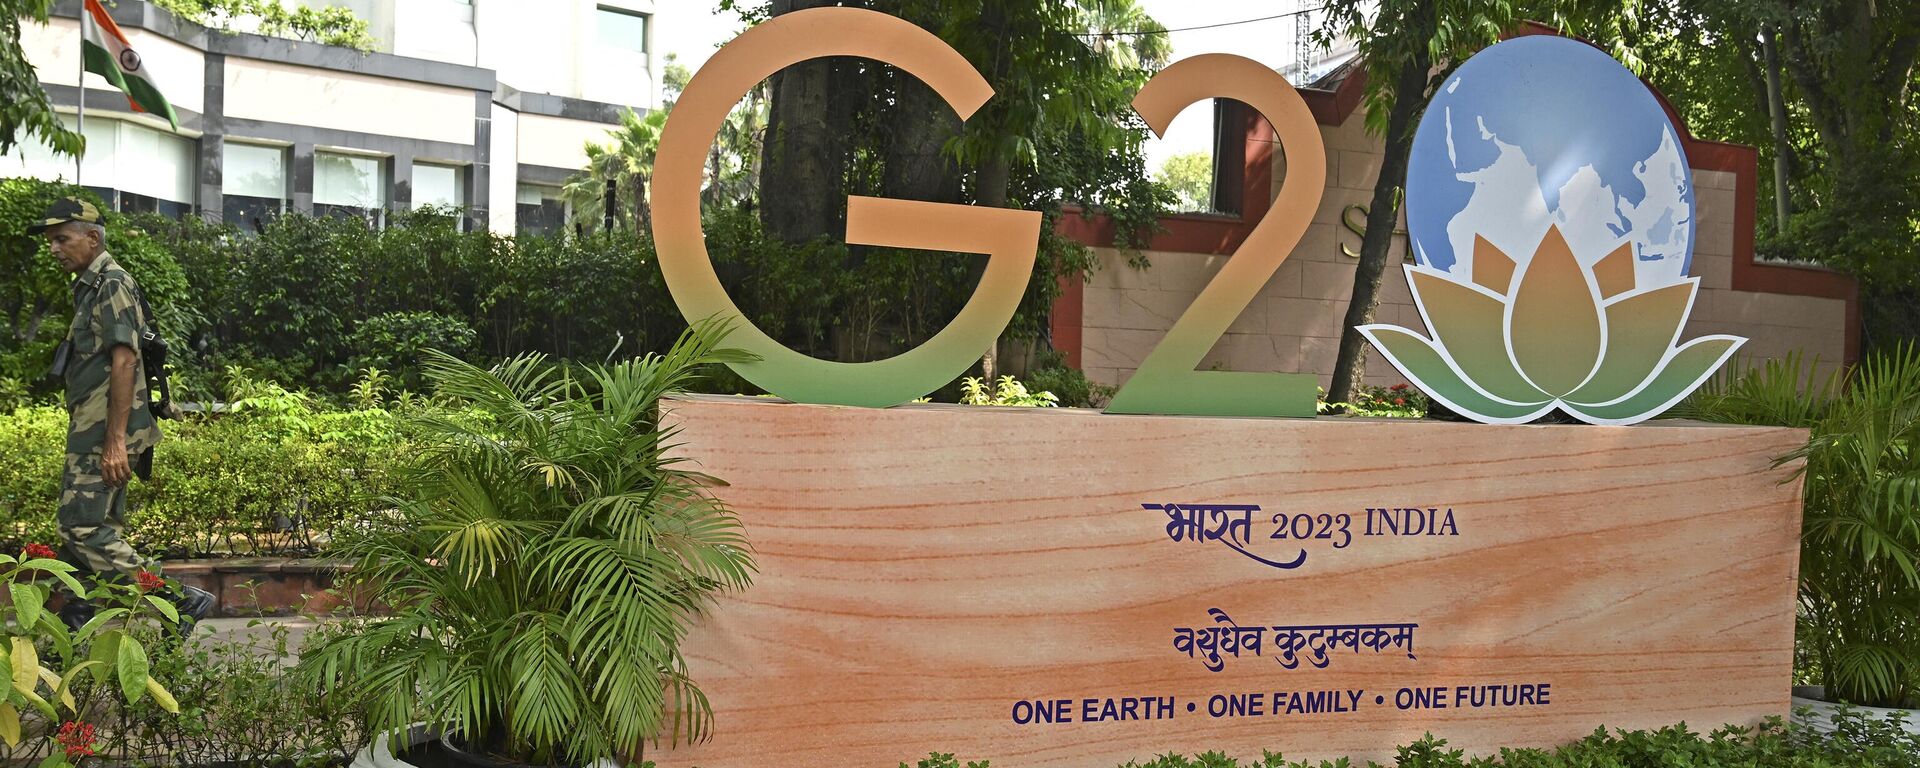 Equipe de segurança passa junto do logotipo do G20 em Nova Deli, Índia, 7 de setembro de 2023 - Sputnik Brasil, 1920, 07.09.2023